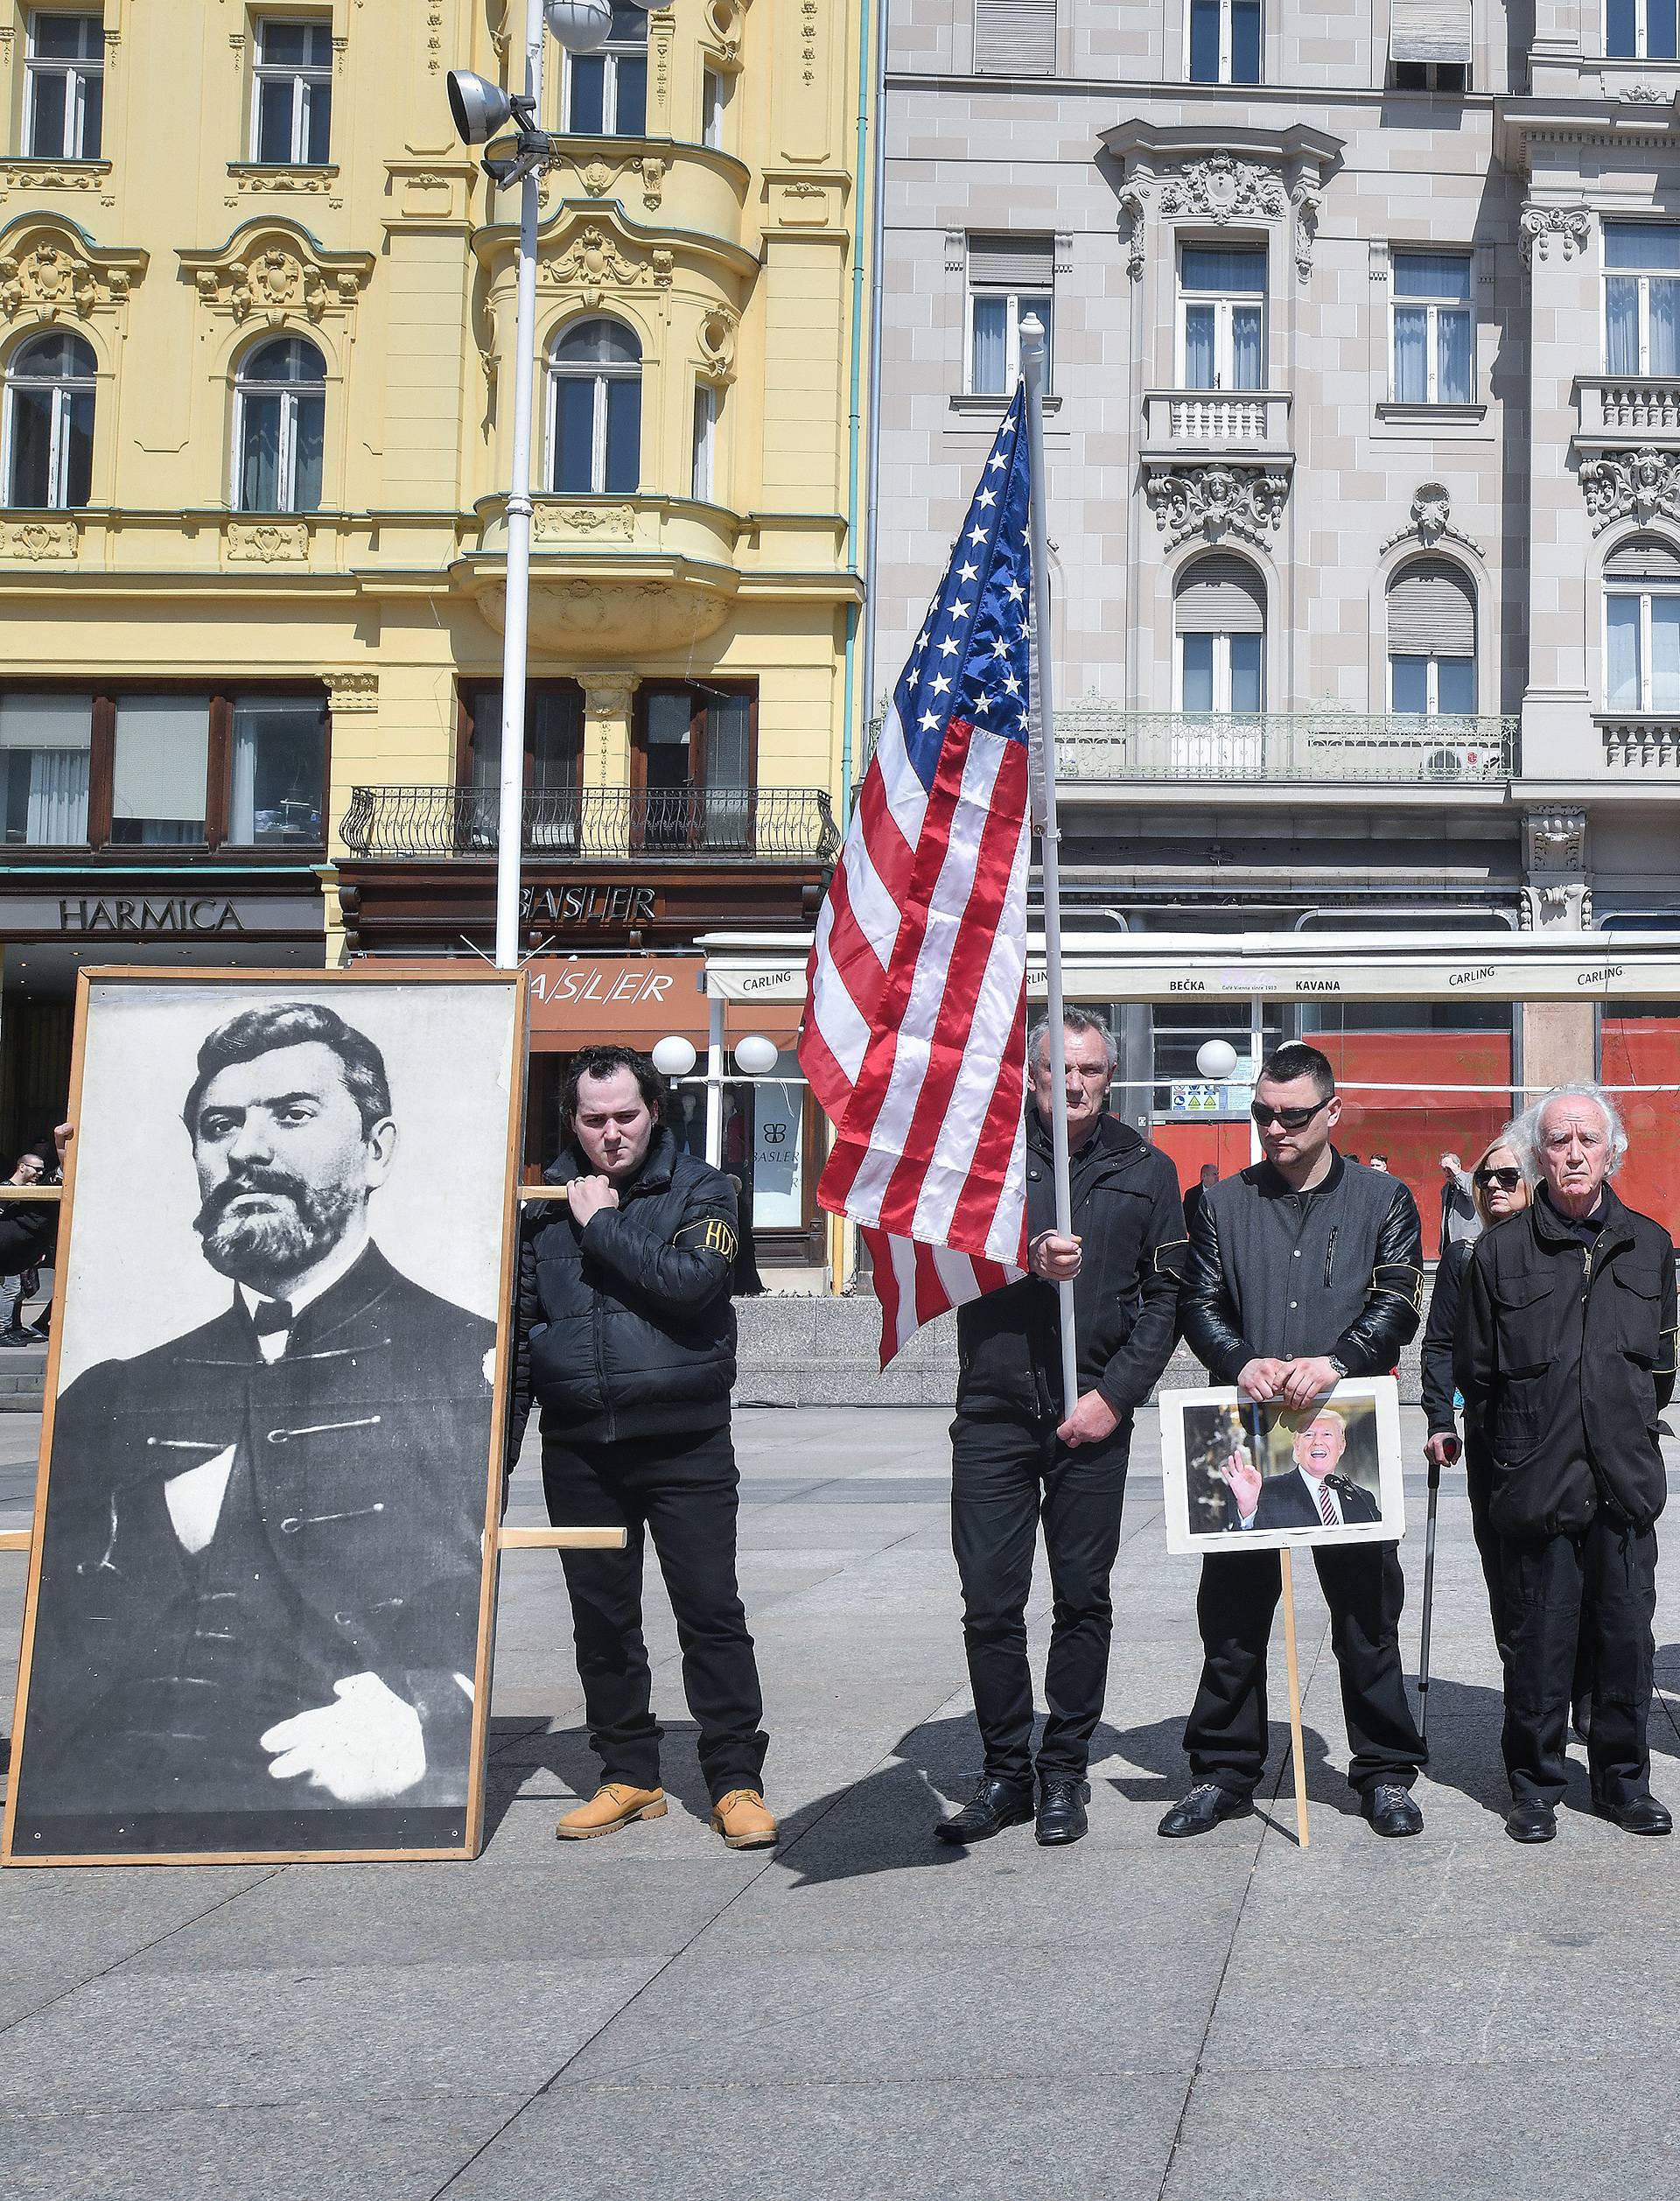 Veleposlanstvo SAD-a osudilo neonacistički marš u Zagrebu